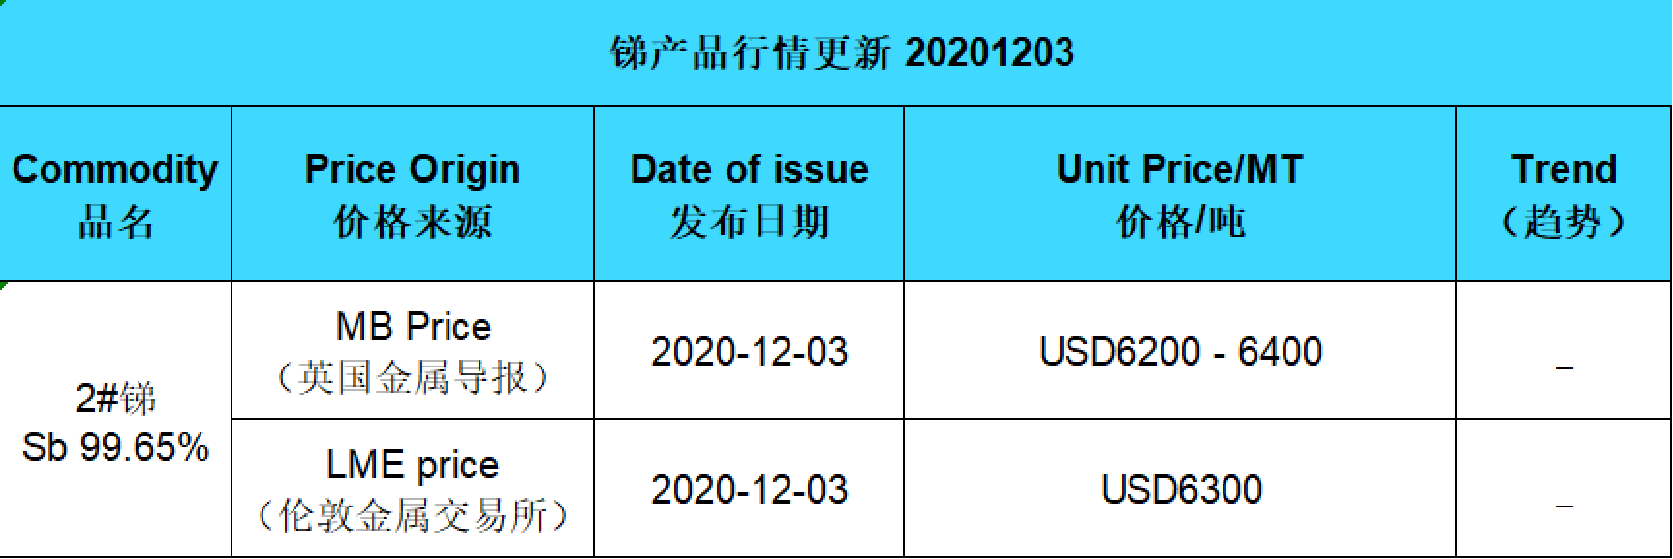 Update price of antimony (20201203)